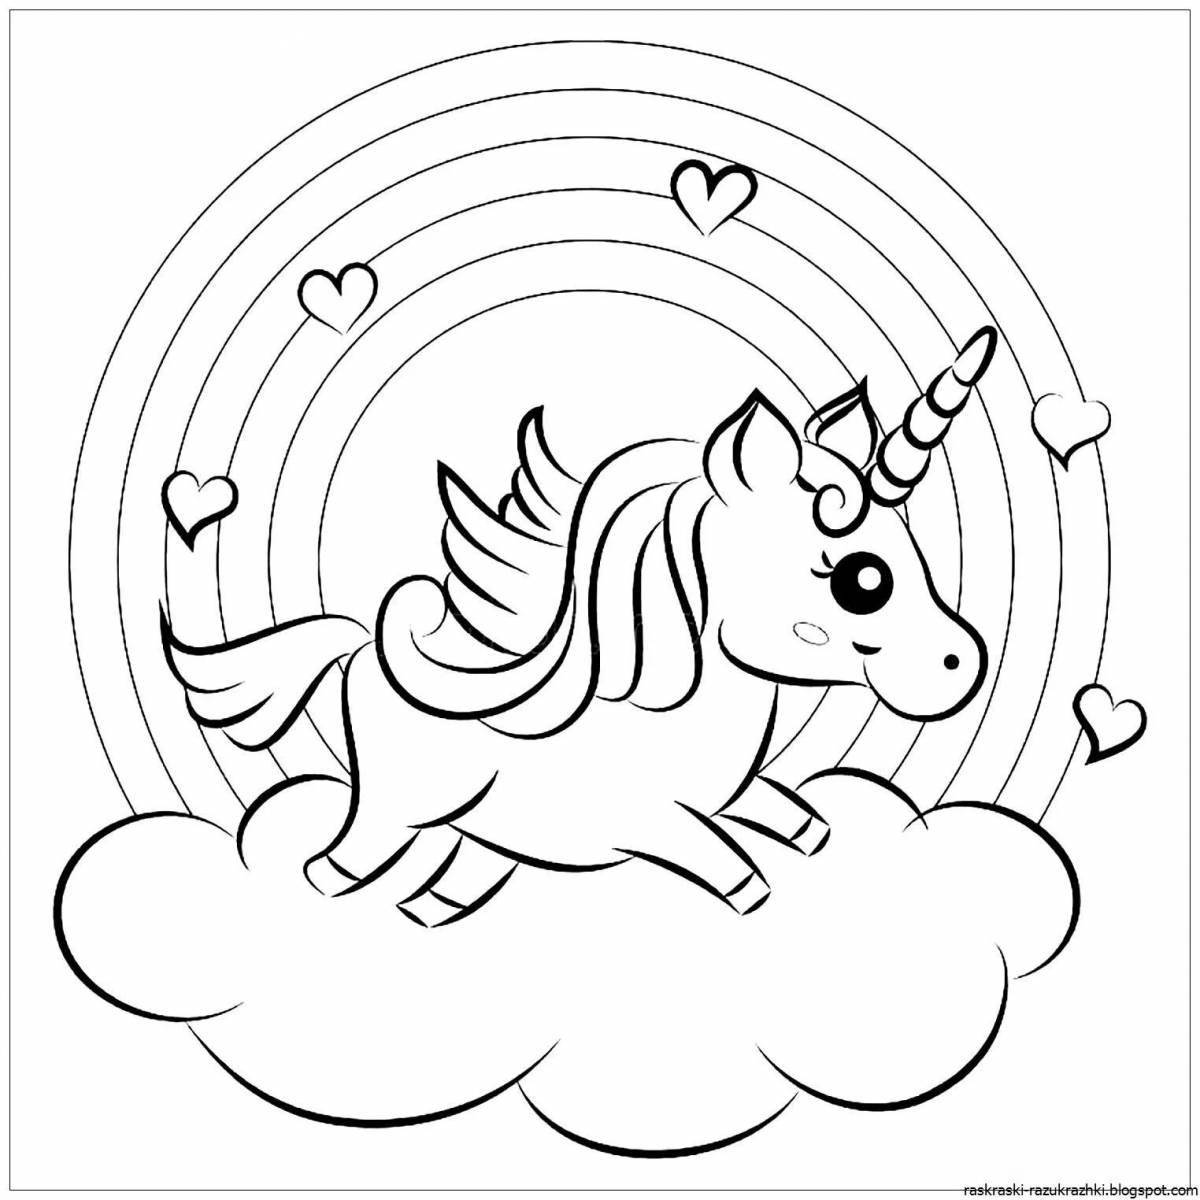 Turn on unicorns #4